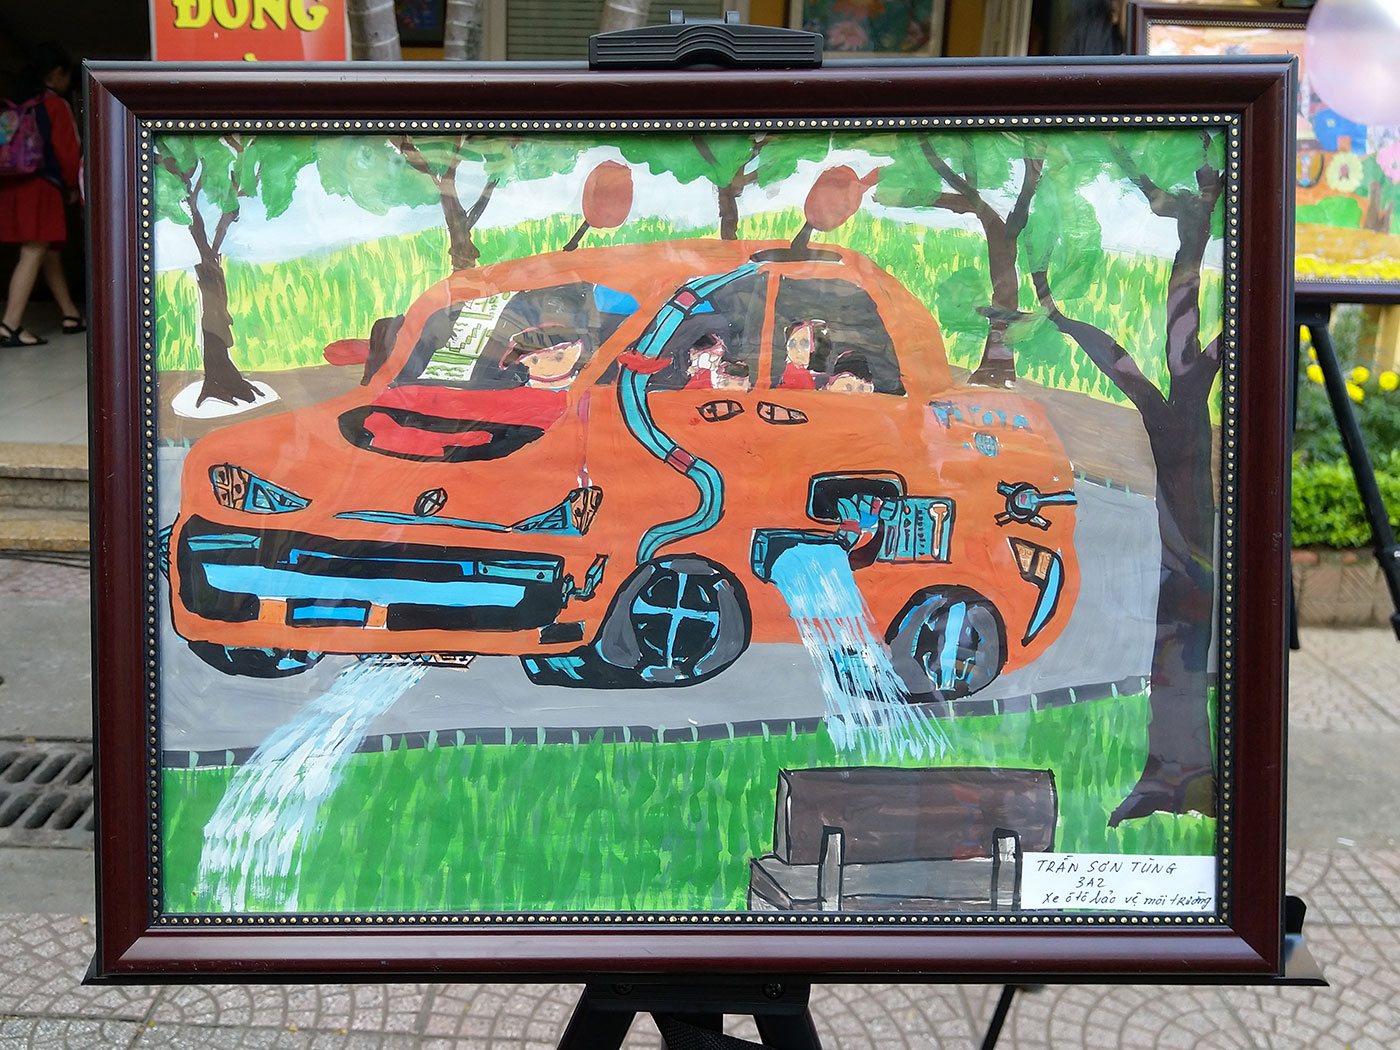 Tiền Giang đạt 02 giải Khuyến khích tại cuộc thi vẽ tranh quốc tế Chiếc ô  tô mơ ước lần thứ 10  Cổng Thông tin điện tử tỉnh Tiền Giang